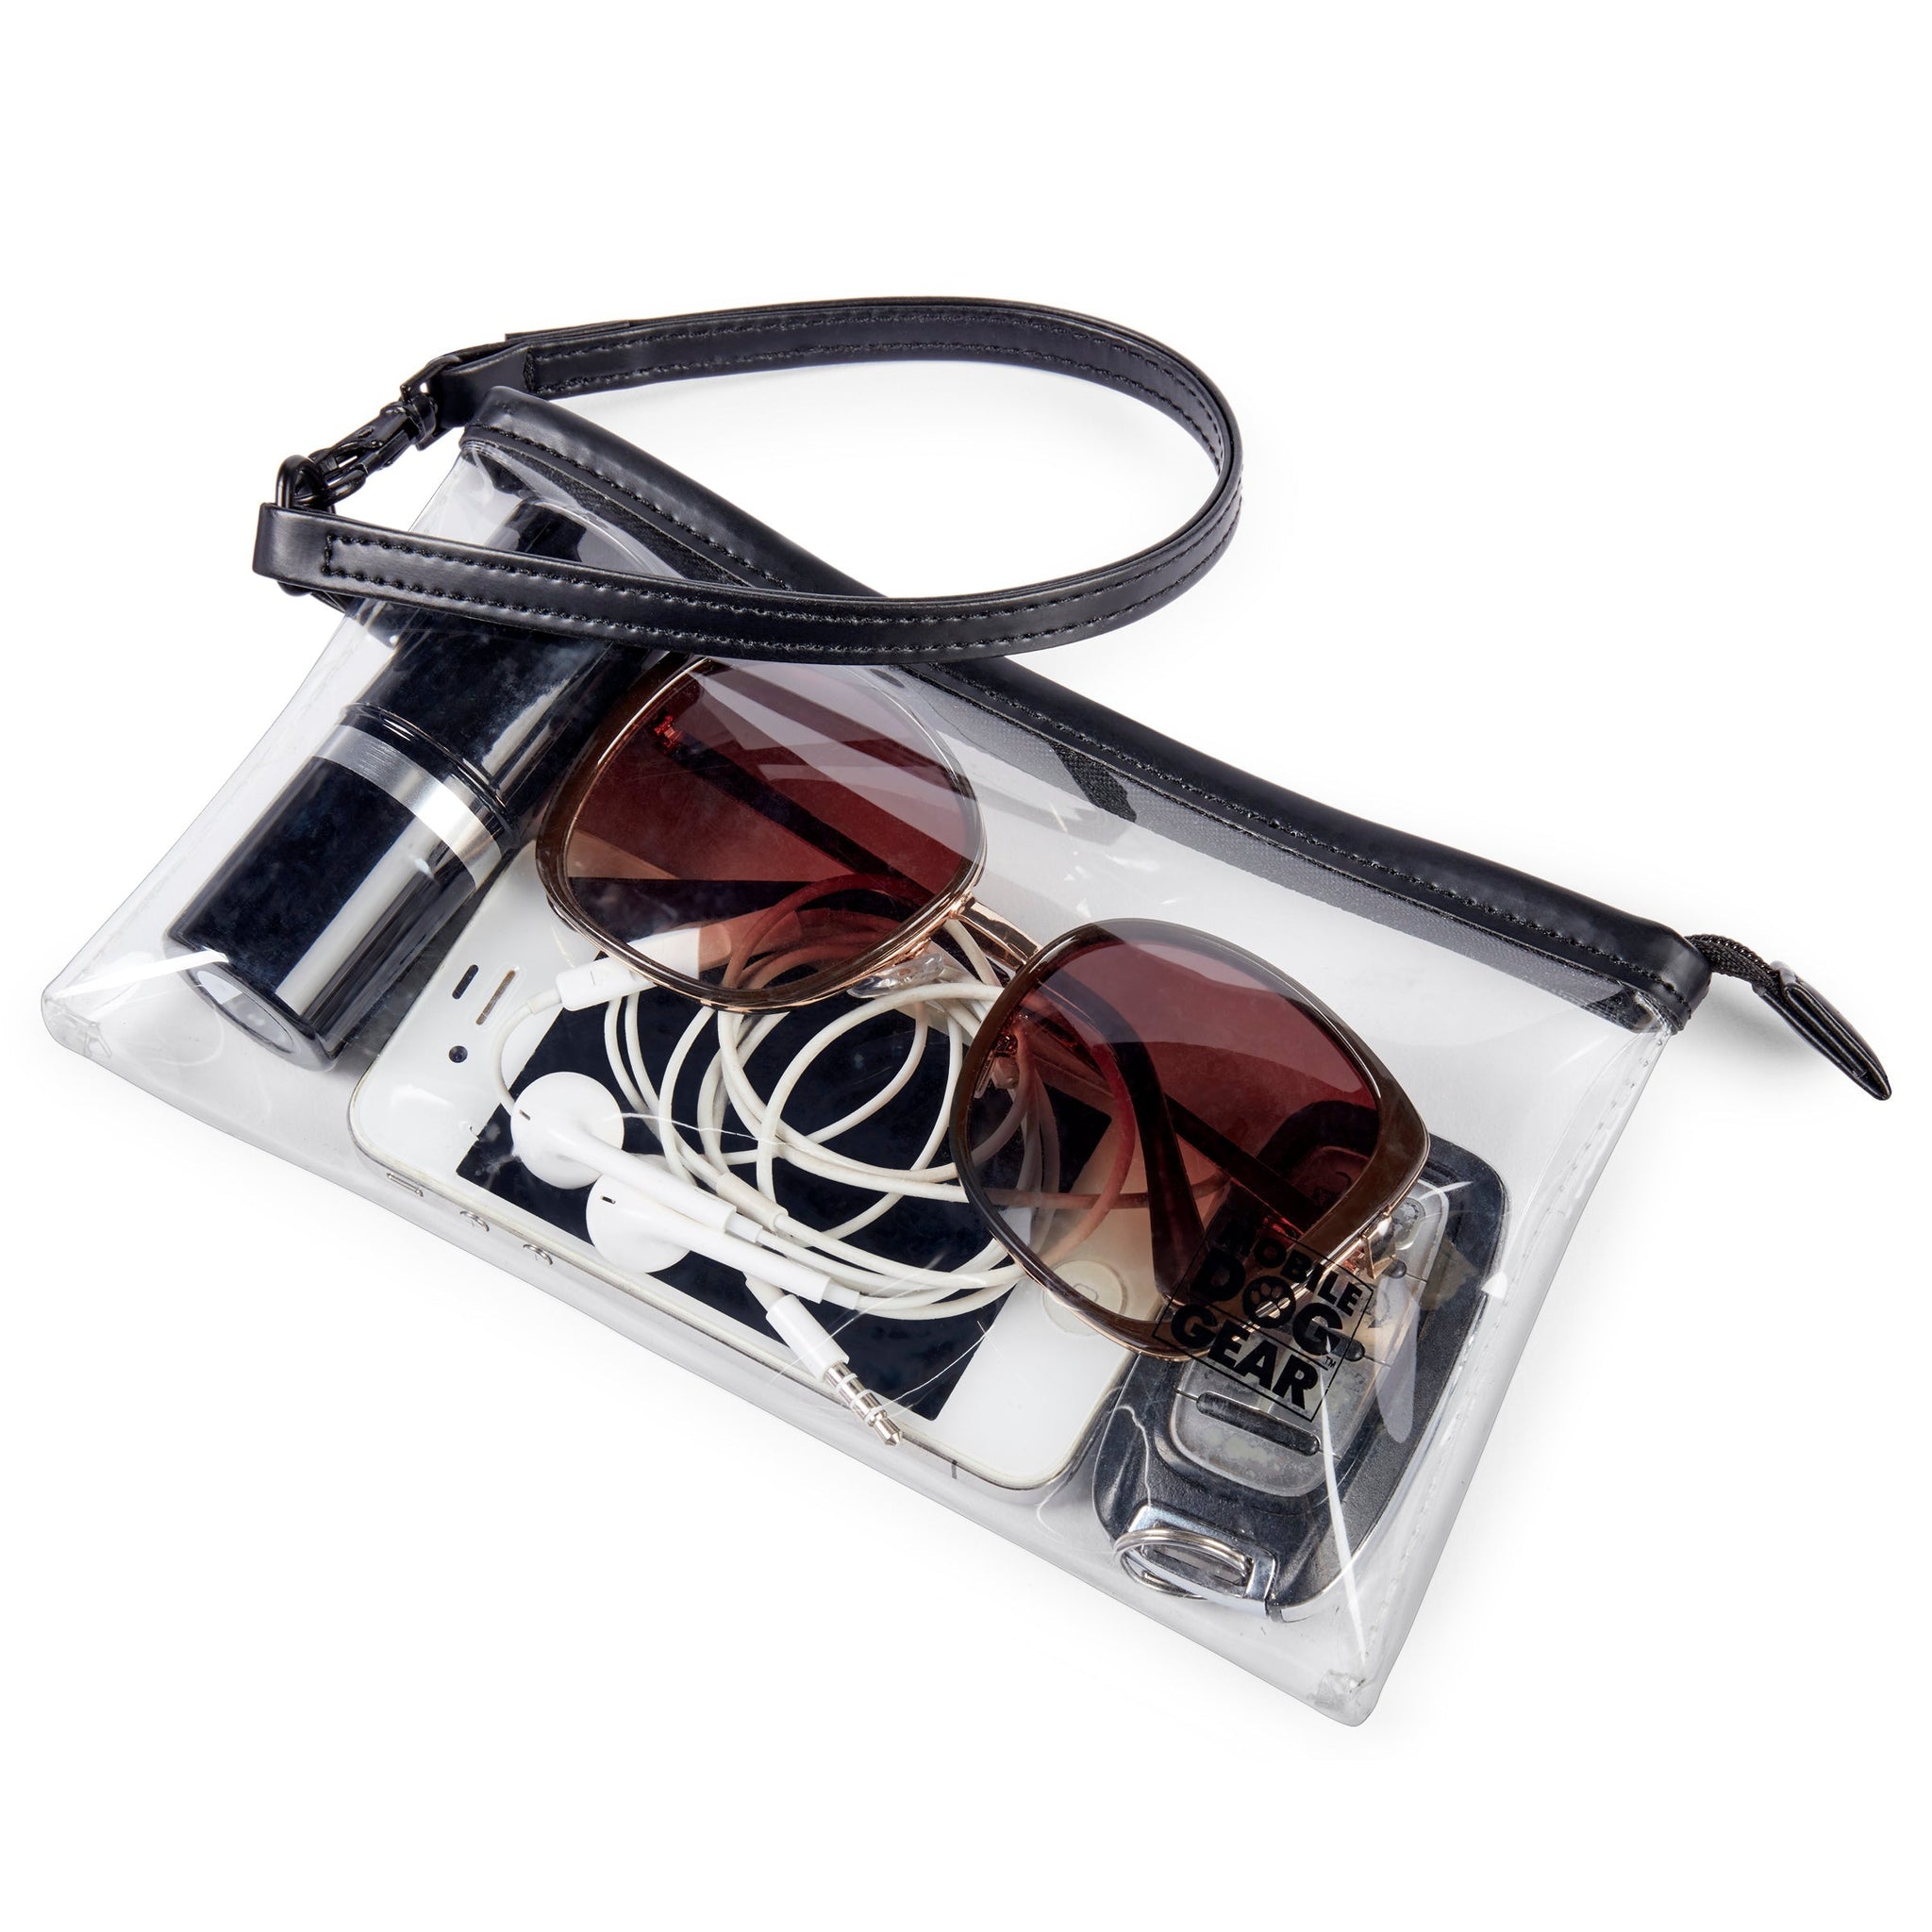  Bracelet transparent, idéal pour ranger les lunettes de soleil, le téléphone, les chargeurs ou tout autre objet indispensable en voyage.